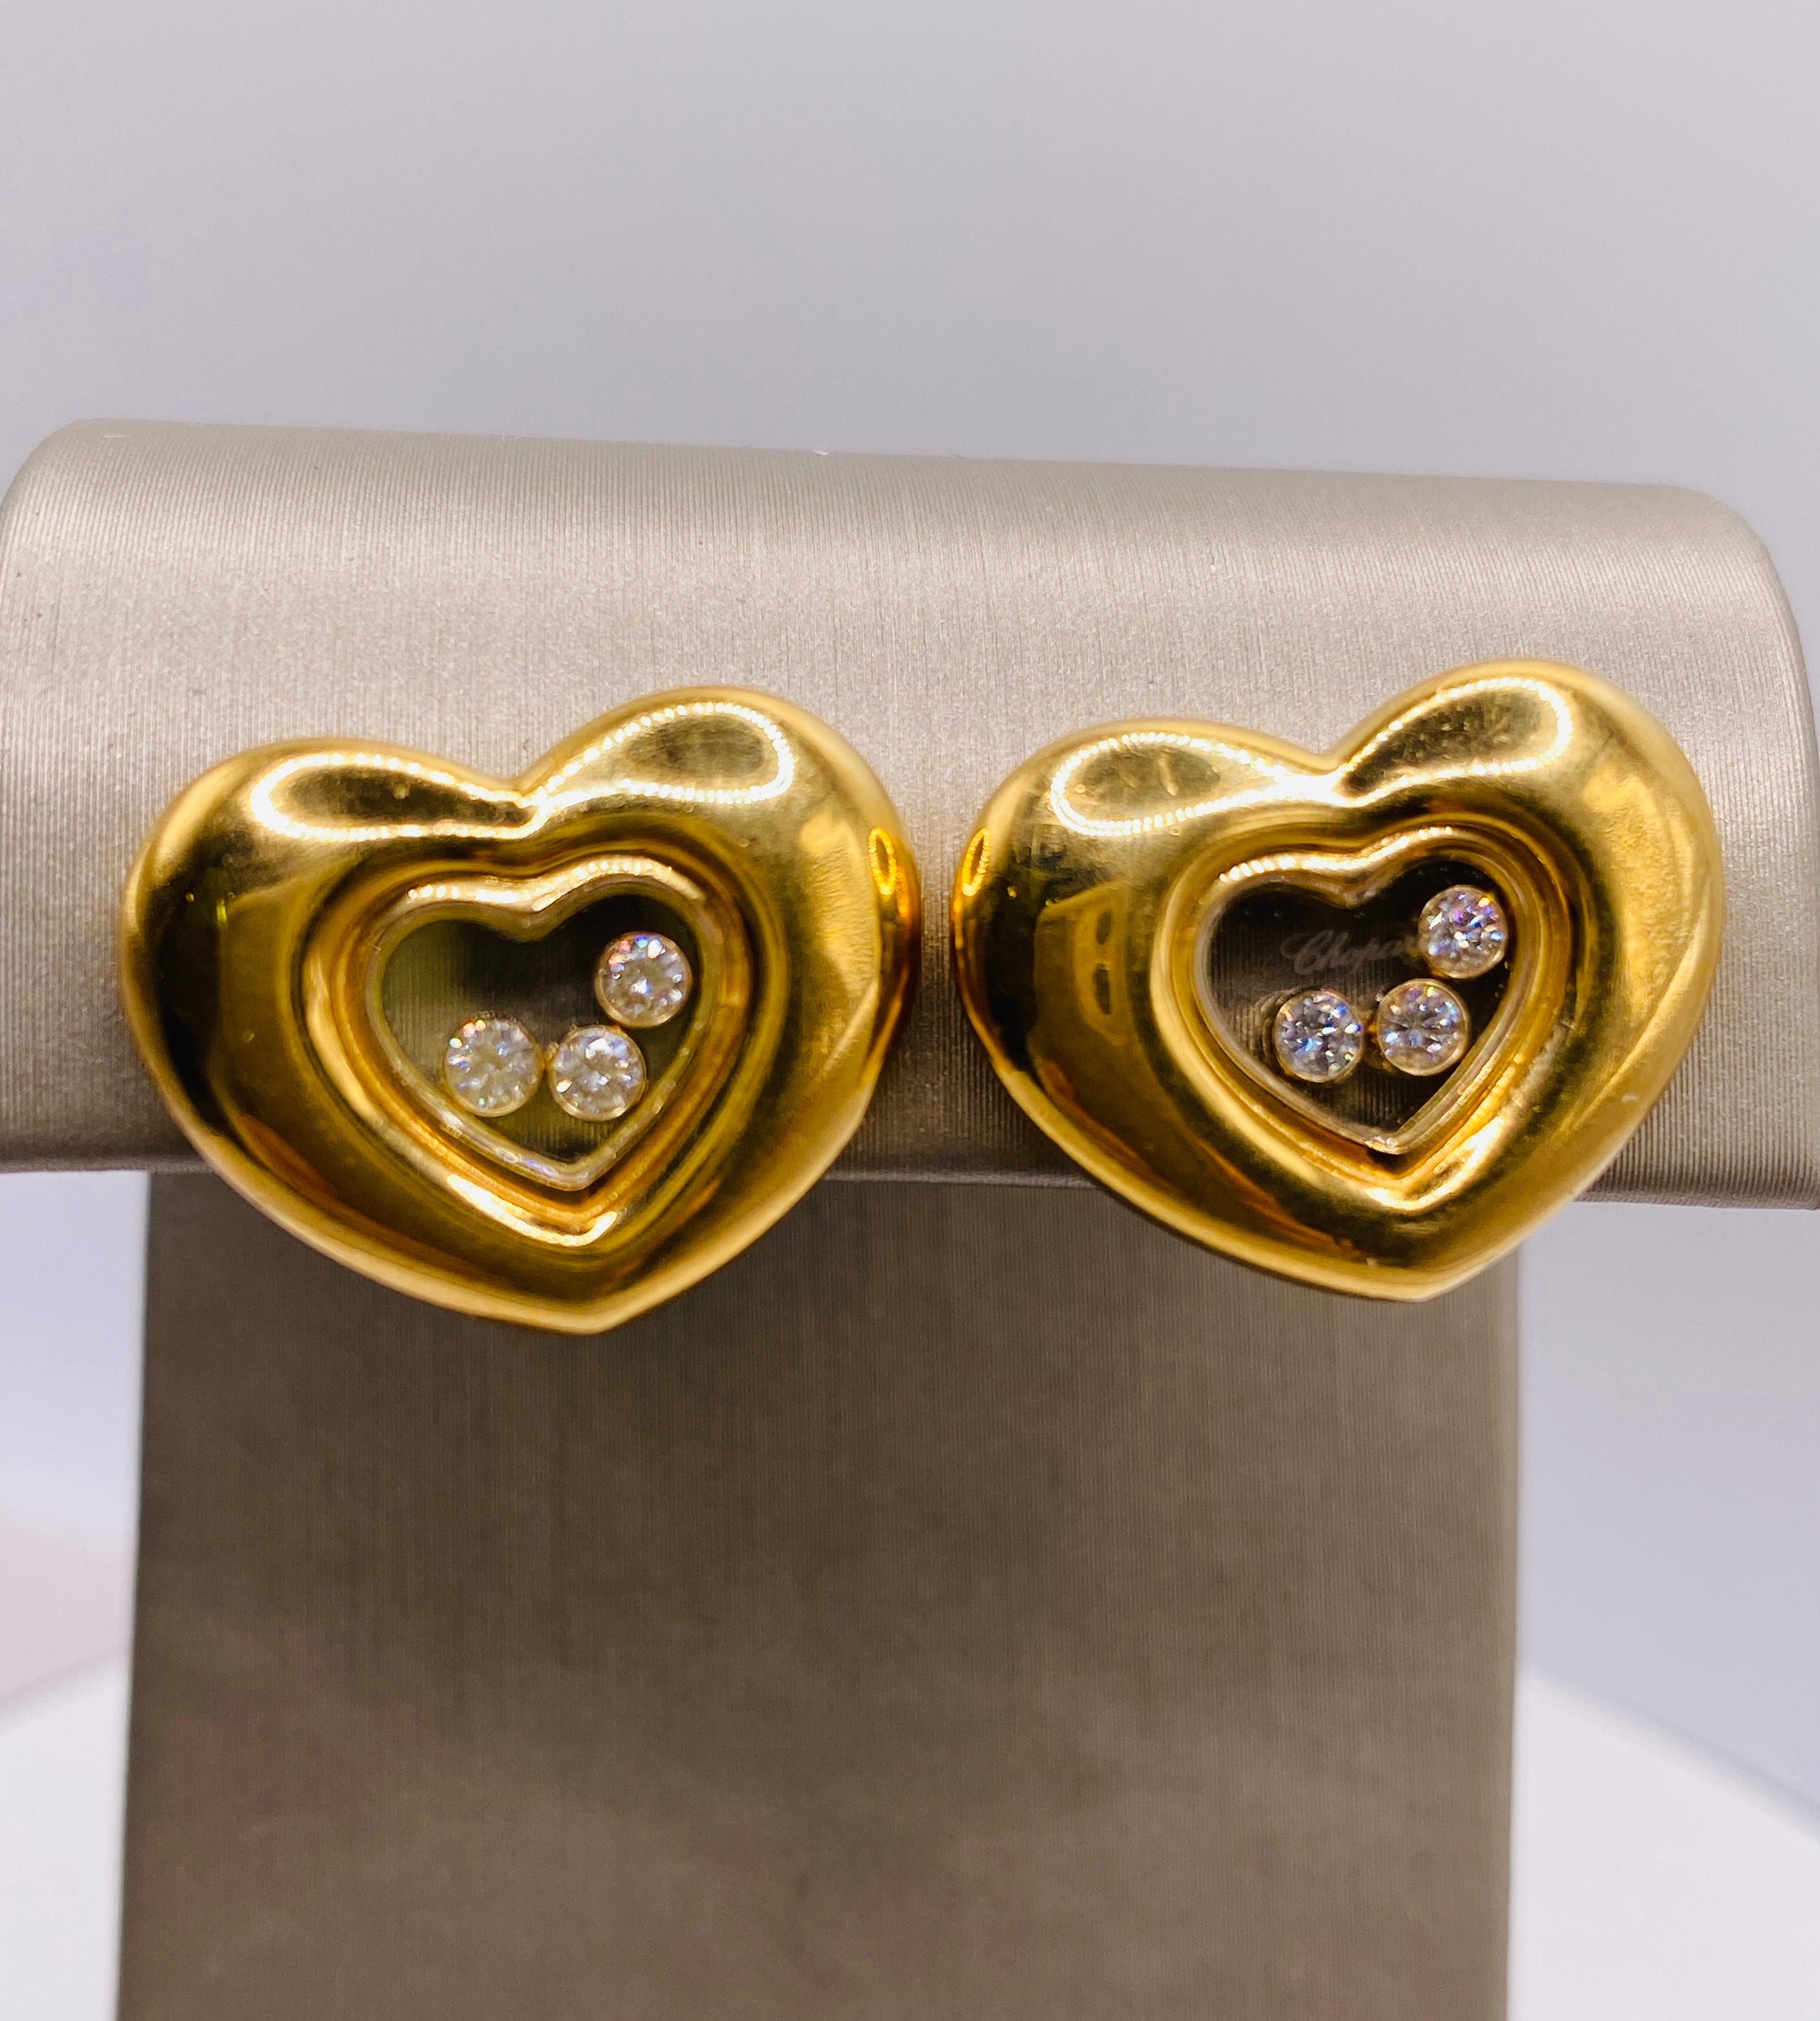  Chopard 18K Gelbgold Happy Diamond Heart Clip-Ohrringe mit 6= ca. 0,25ctw runden Brillanten. Ge�ätzte Chopard Geneve. Gestempelt Chopard, Swiss, 750, 84/1742-20 und 9651747. Gewicht 18,7 g. Jedes Herz ist etwa 20 x 16 mm groß. Einzelhandelspreis